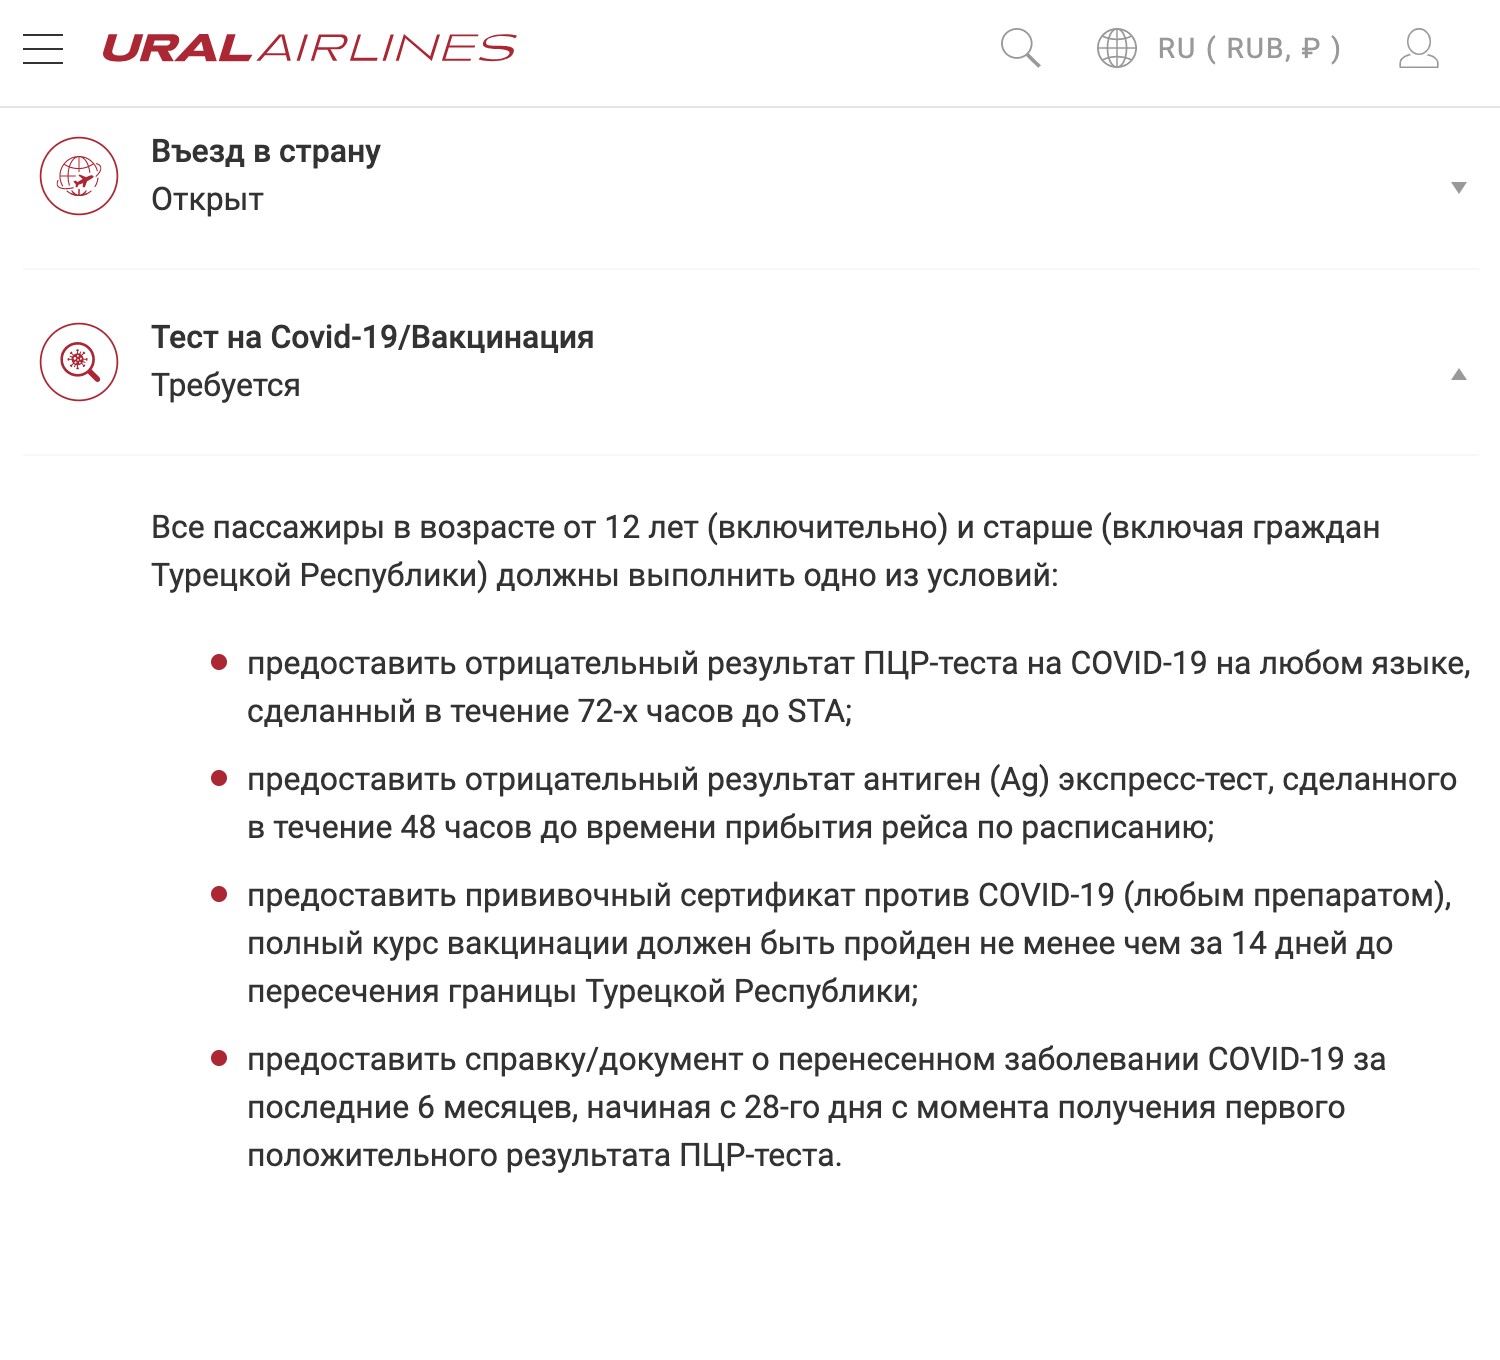 «Уральские авиалинии» не успели обновить информацию на сайте и утверждают, что для въезда подойдет прививка любым препаратом